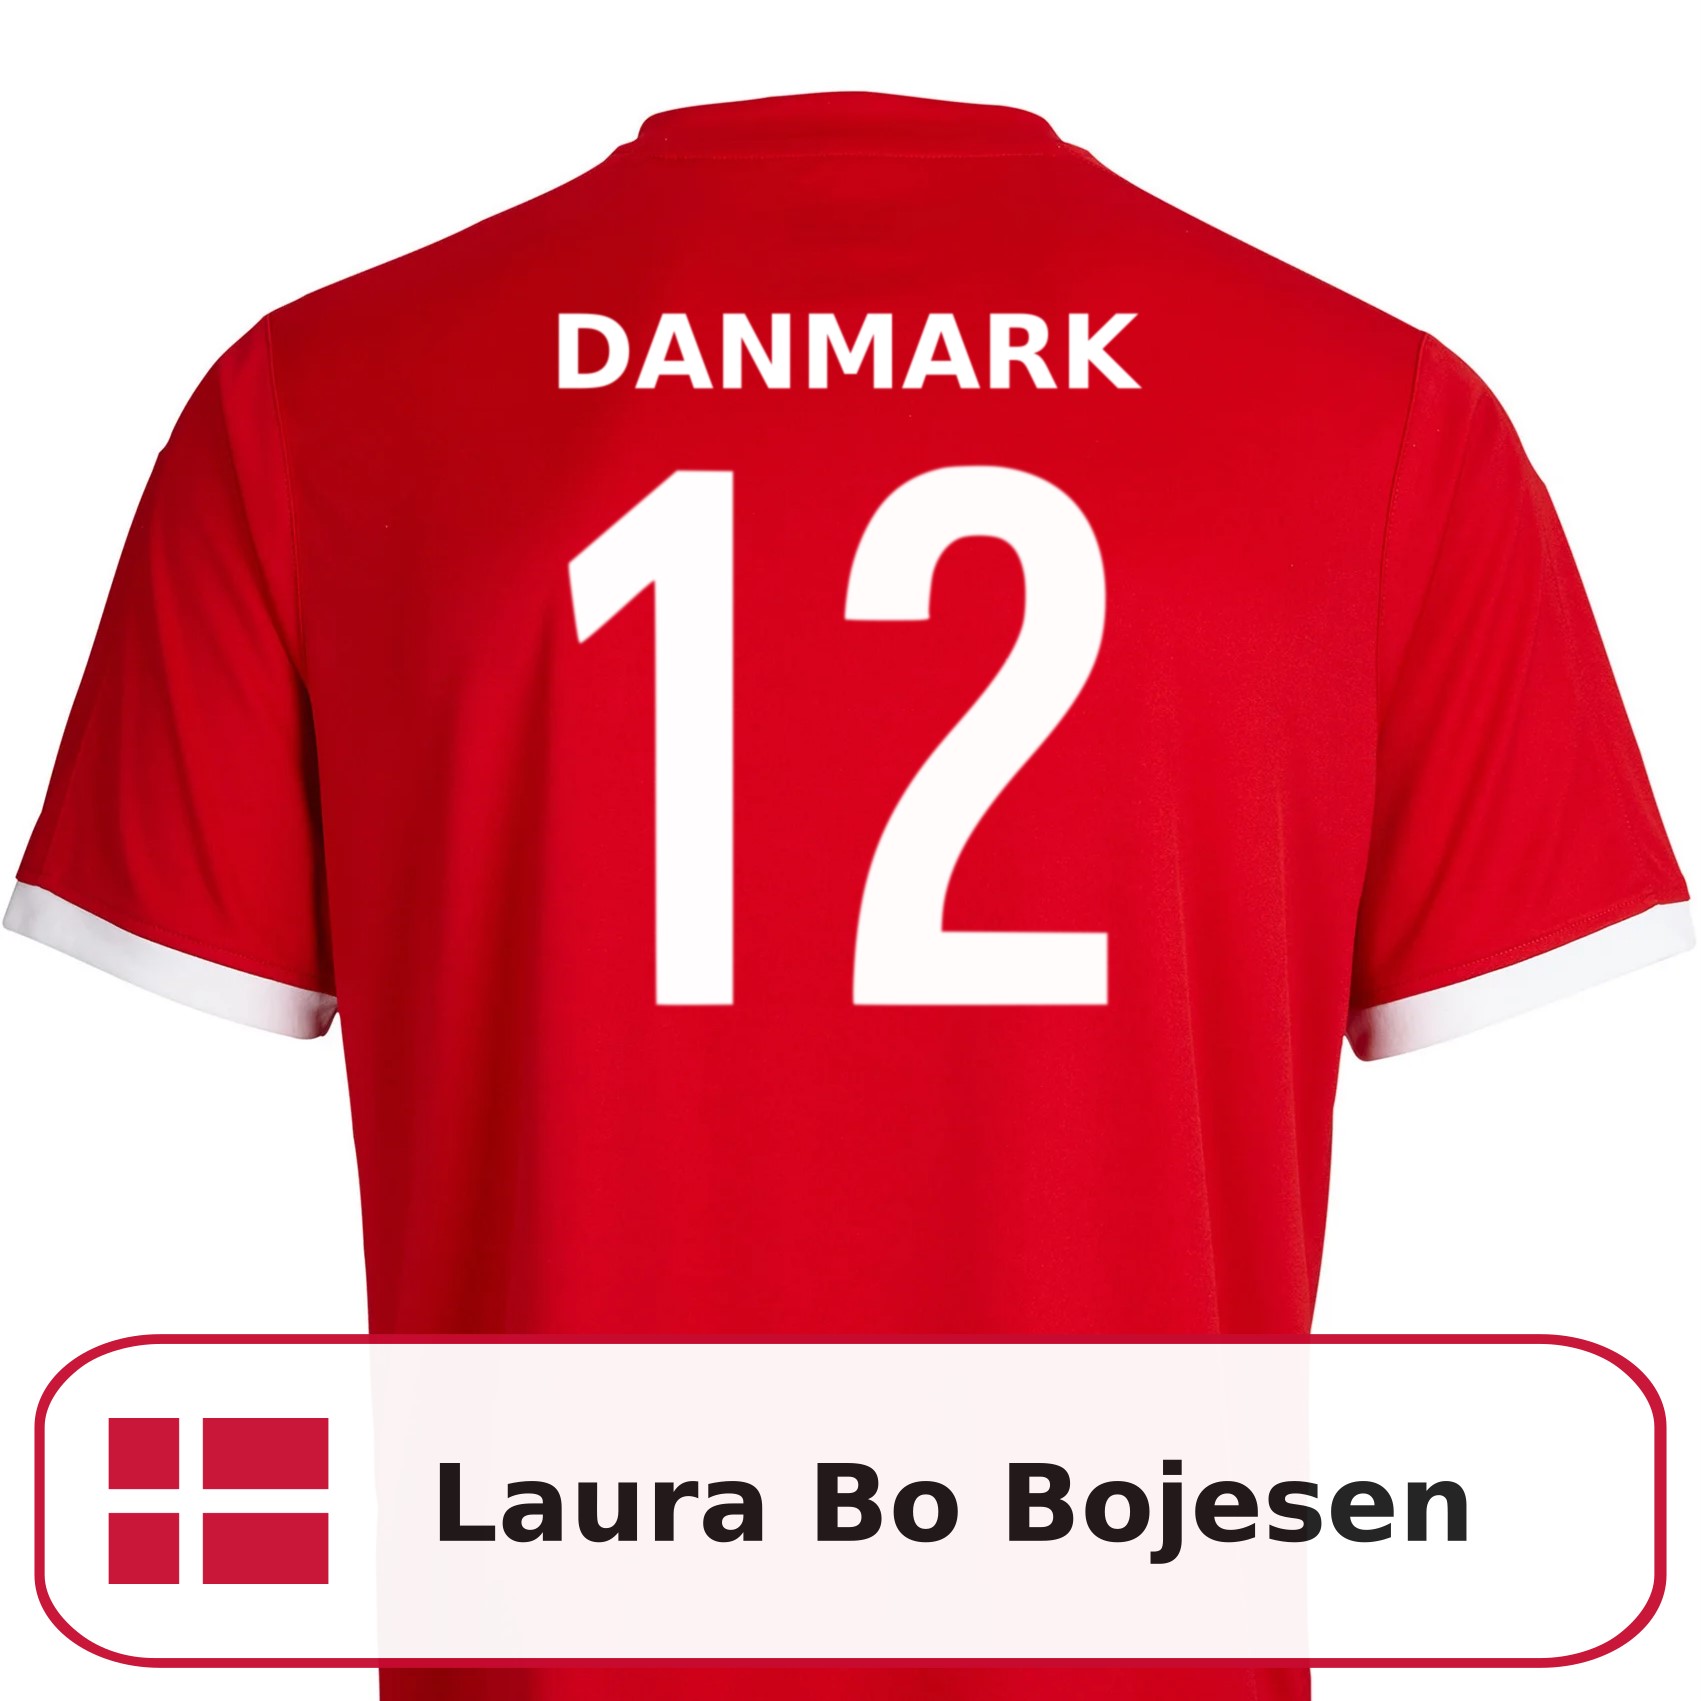 Laura Bo Bojesen